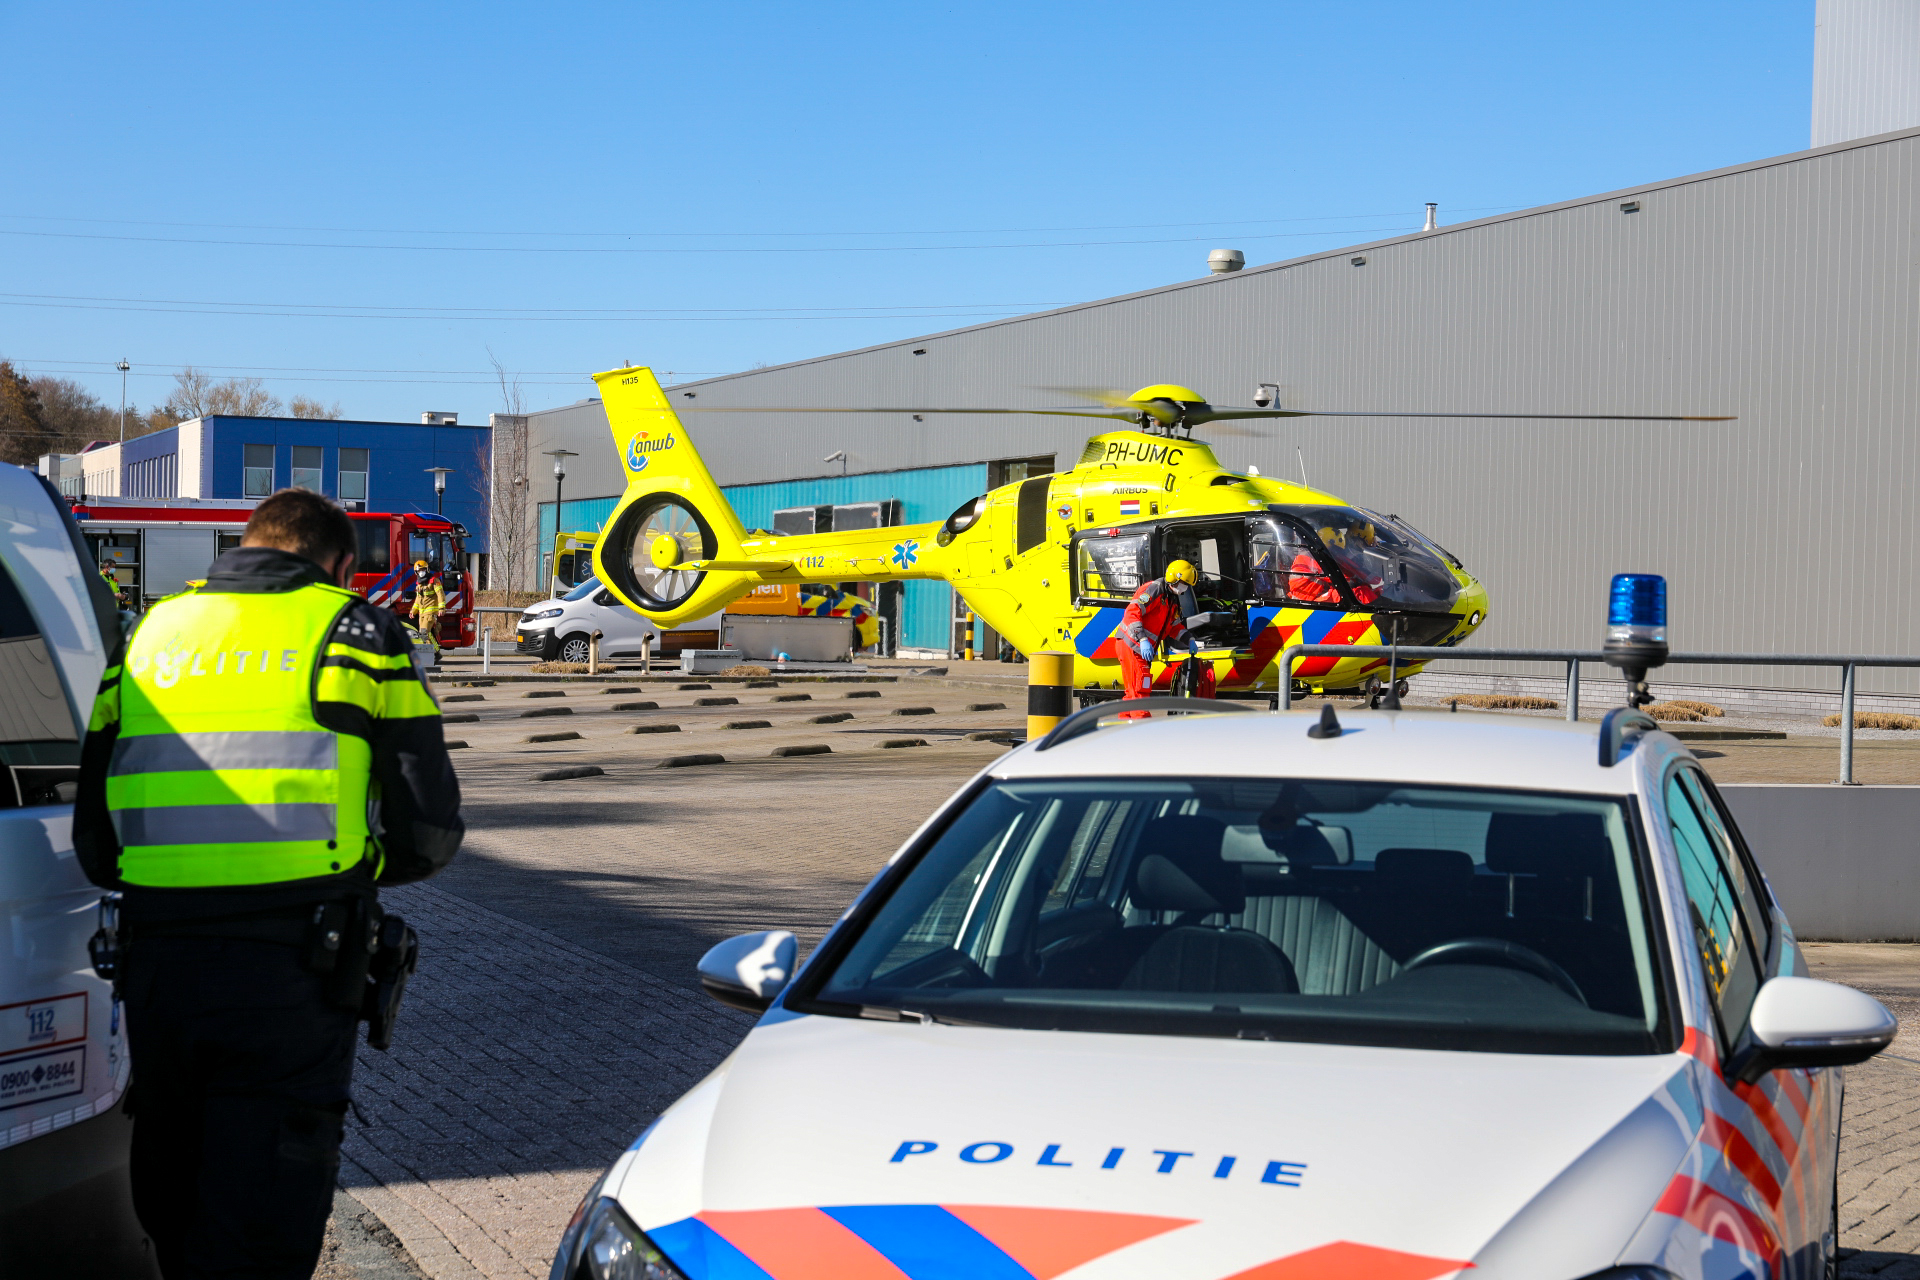 Ernstig bedrijfsongeval op industrieterrein in Apeldoorn zuid; traumahelikopter geland